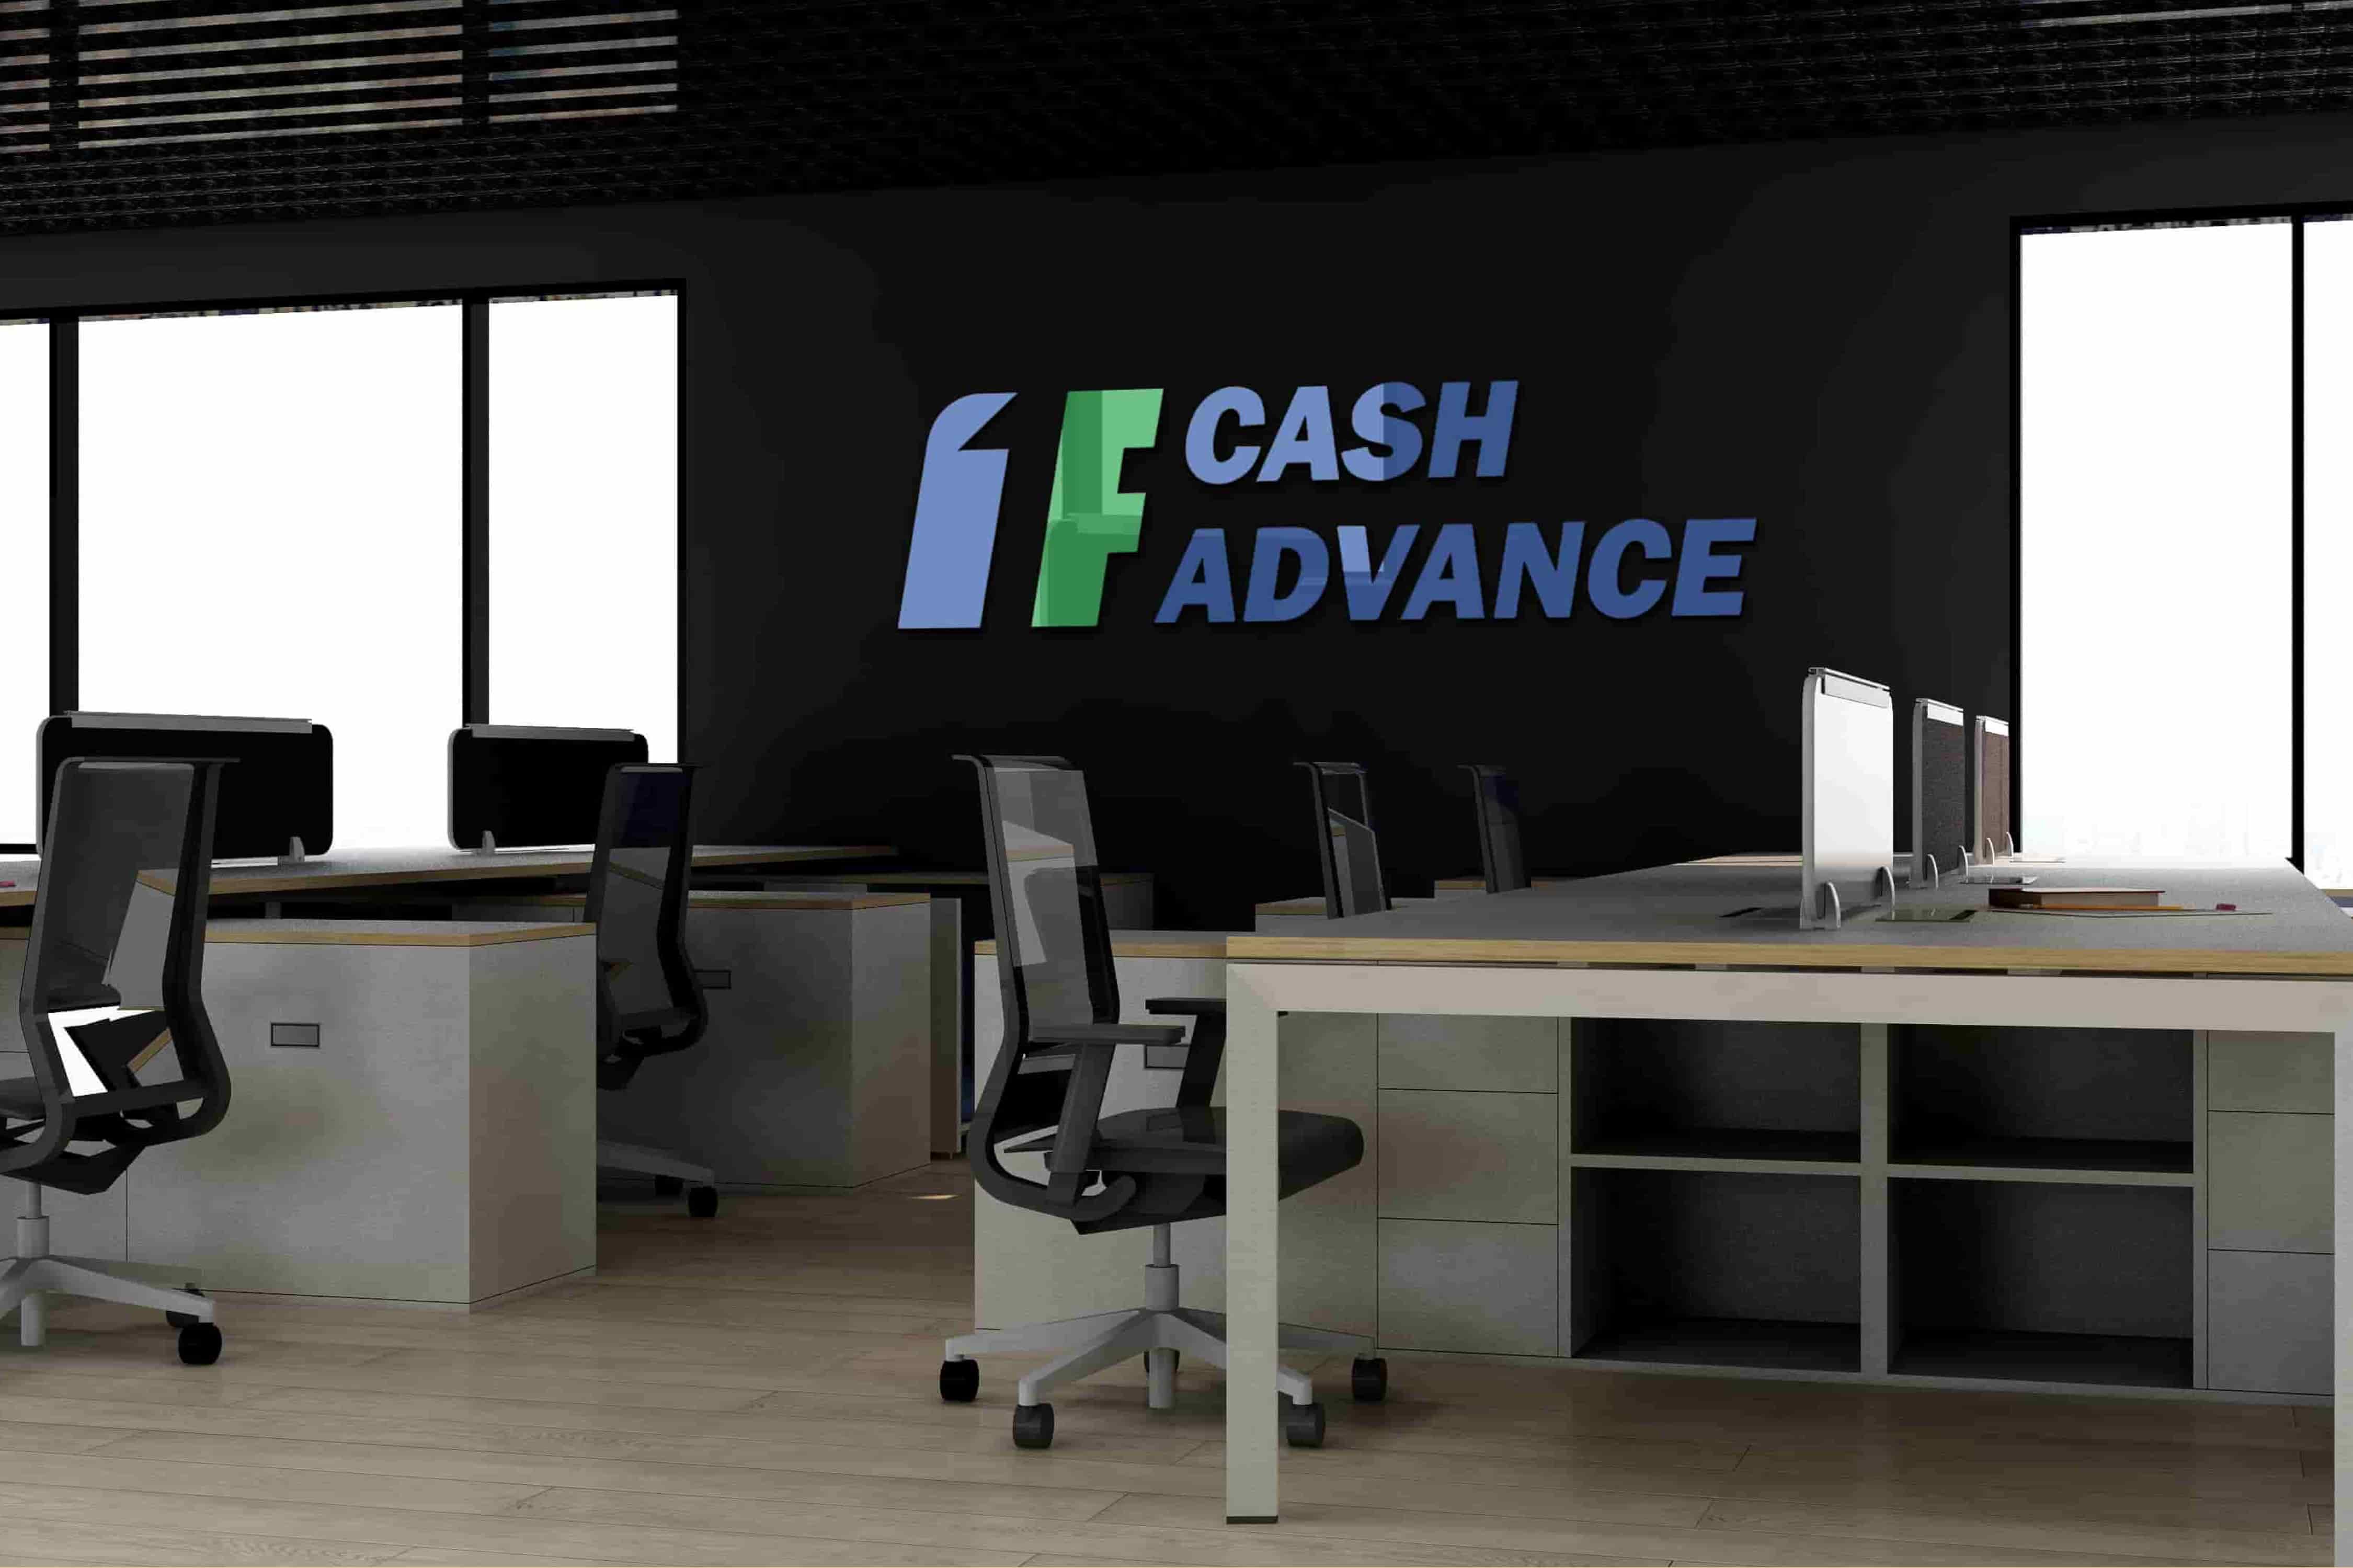 1F Cash Advance payday loans in Burlington, VT